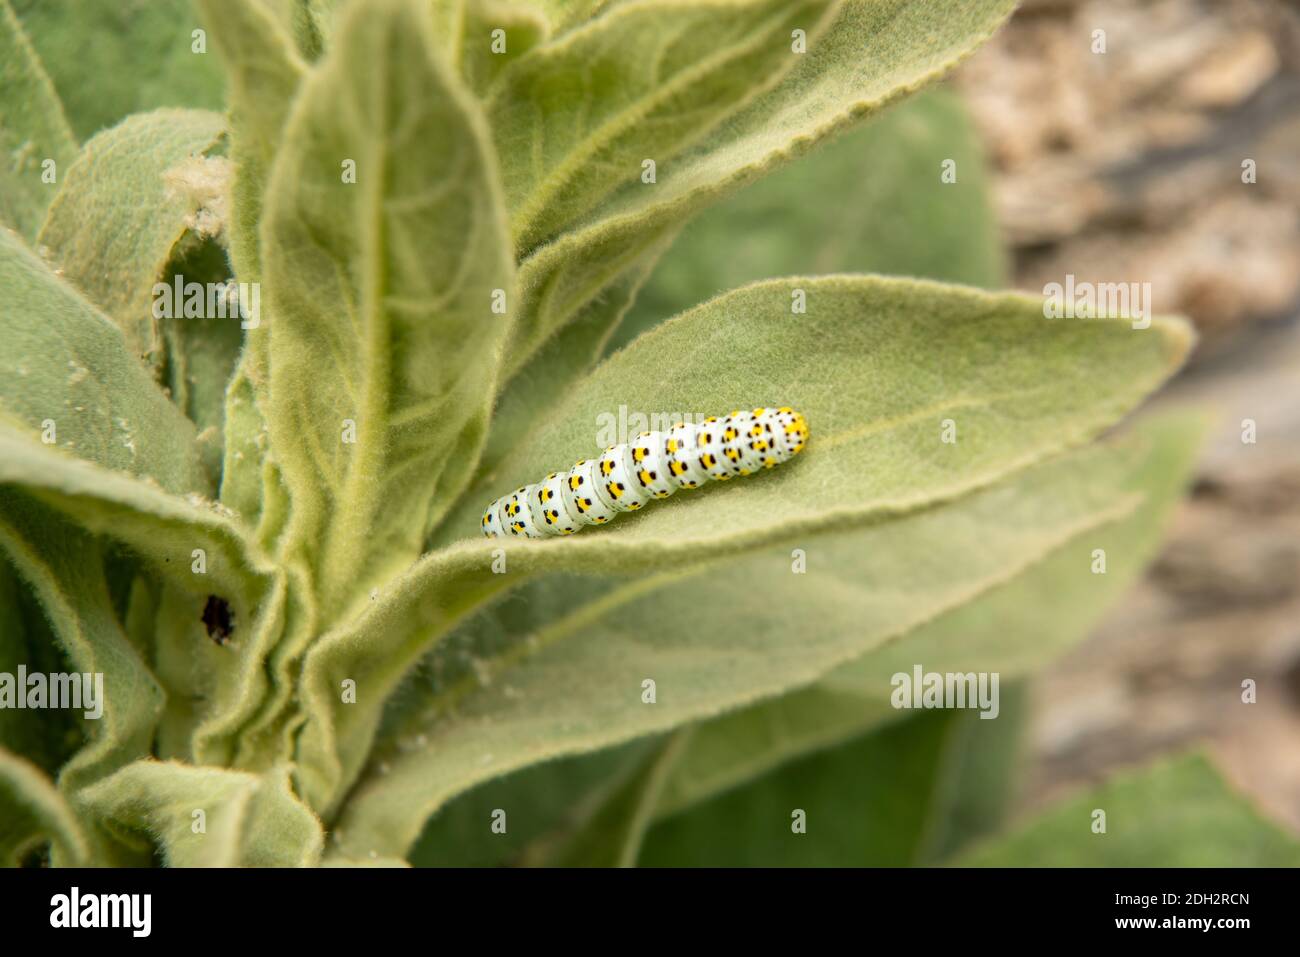 Brazunwurz monaco caterpillar Foto Stock